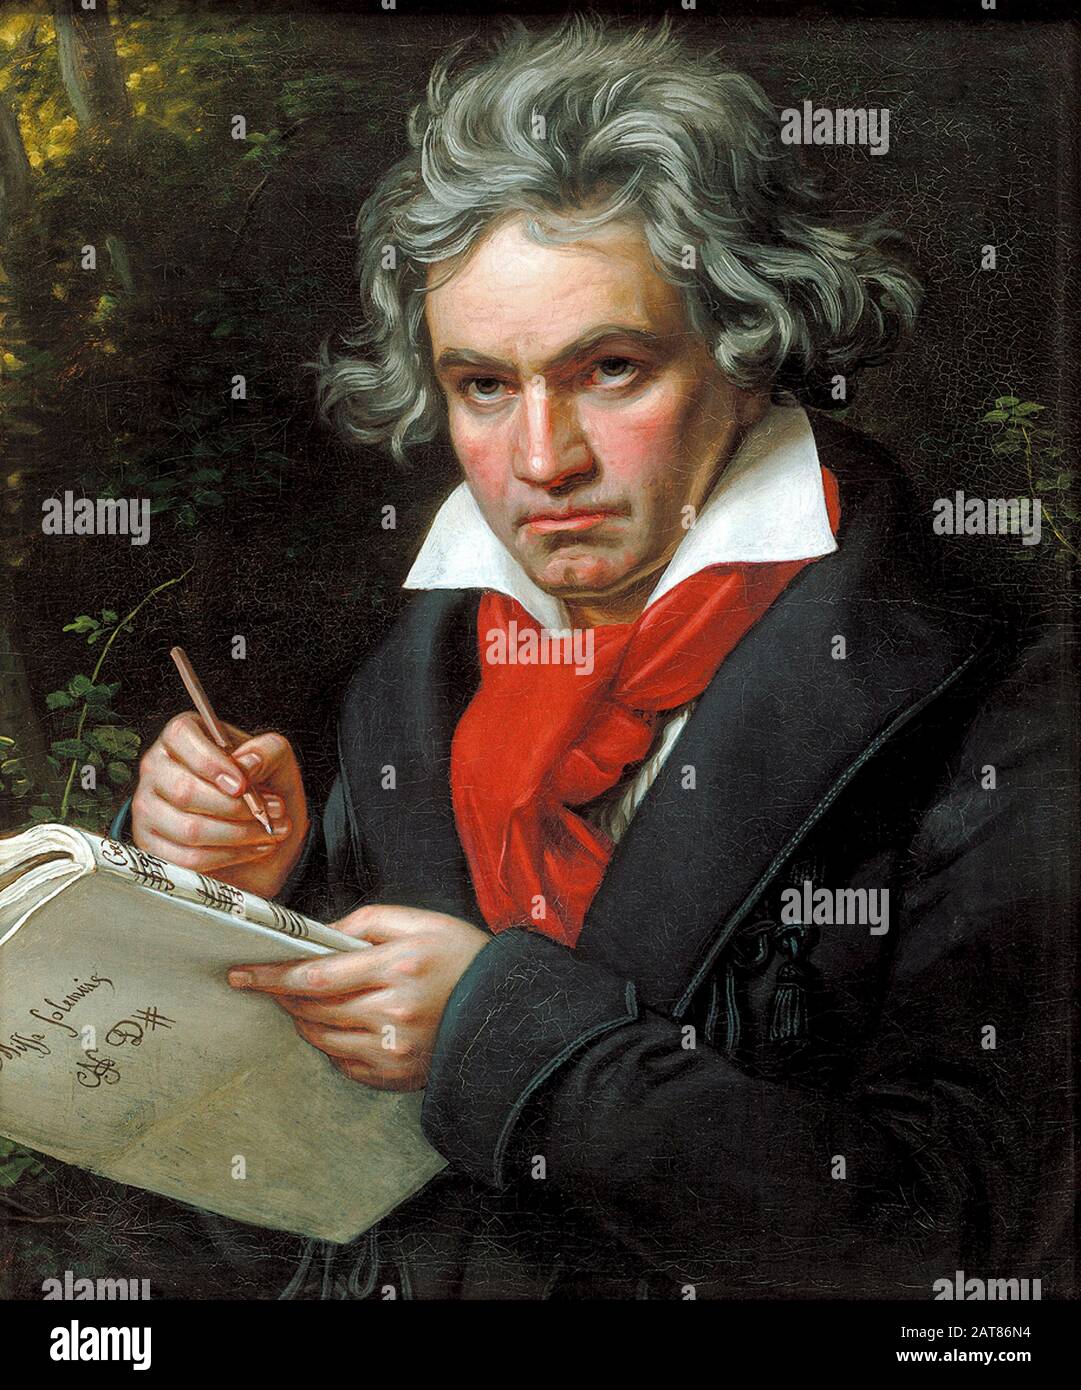 Joseph Karl Stieler (1781-1858), ritratto di Ludwig van Beethoven intento sulla composizione della Missa Solemnis op. 123, olio su tela, Bonn, Beethoven-Haus, 1820 Foto Stock